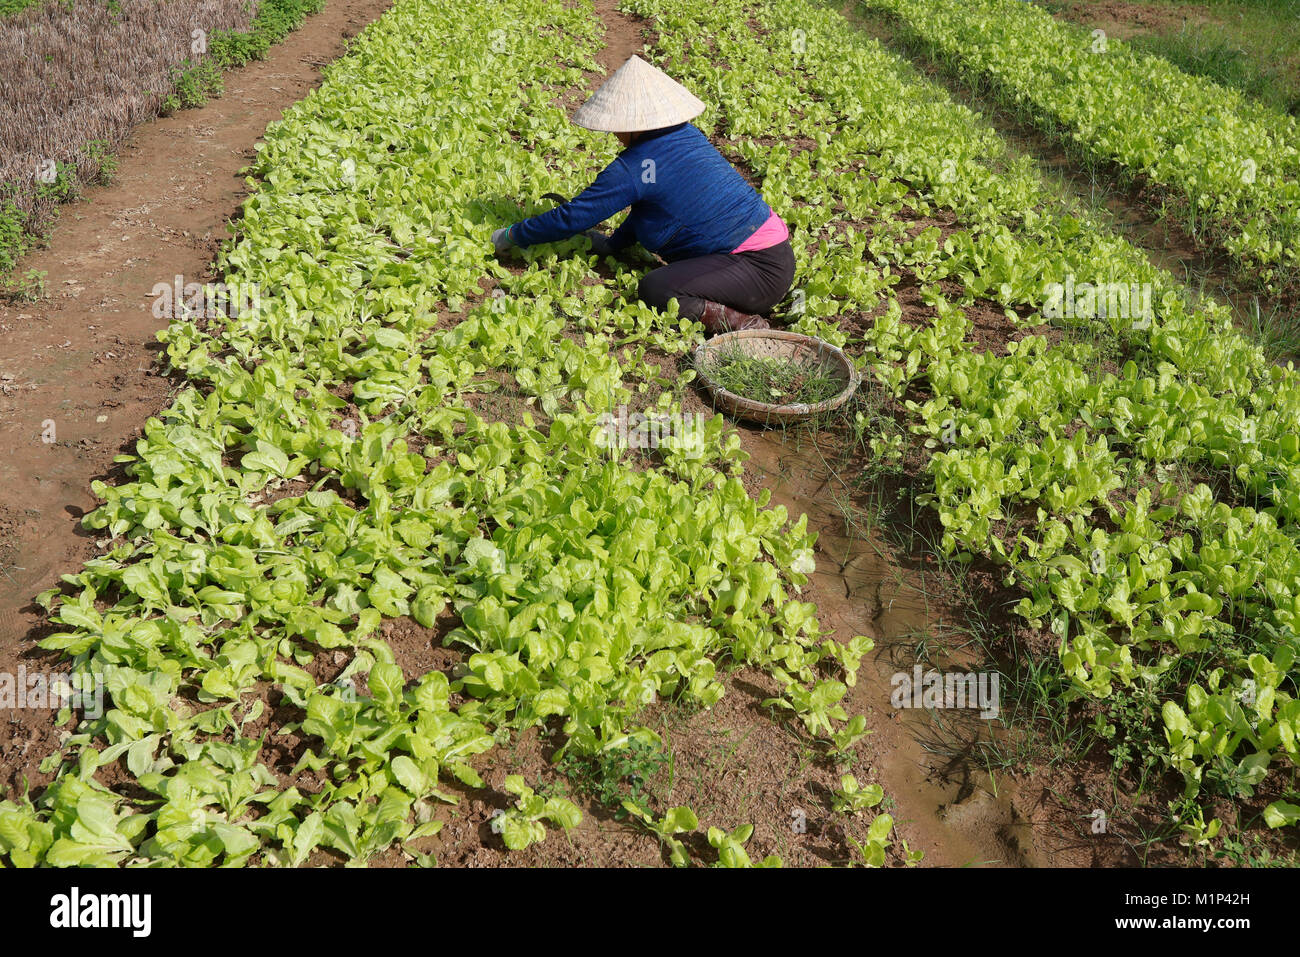 Vietnamienne travaillant dans un champ de laitue, Kon Tum, le Vietnam, l'Indochine, l'Asie du Sud-Est, Asie Banque D'Images